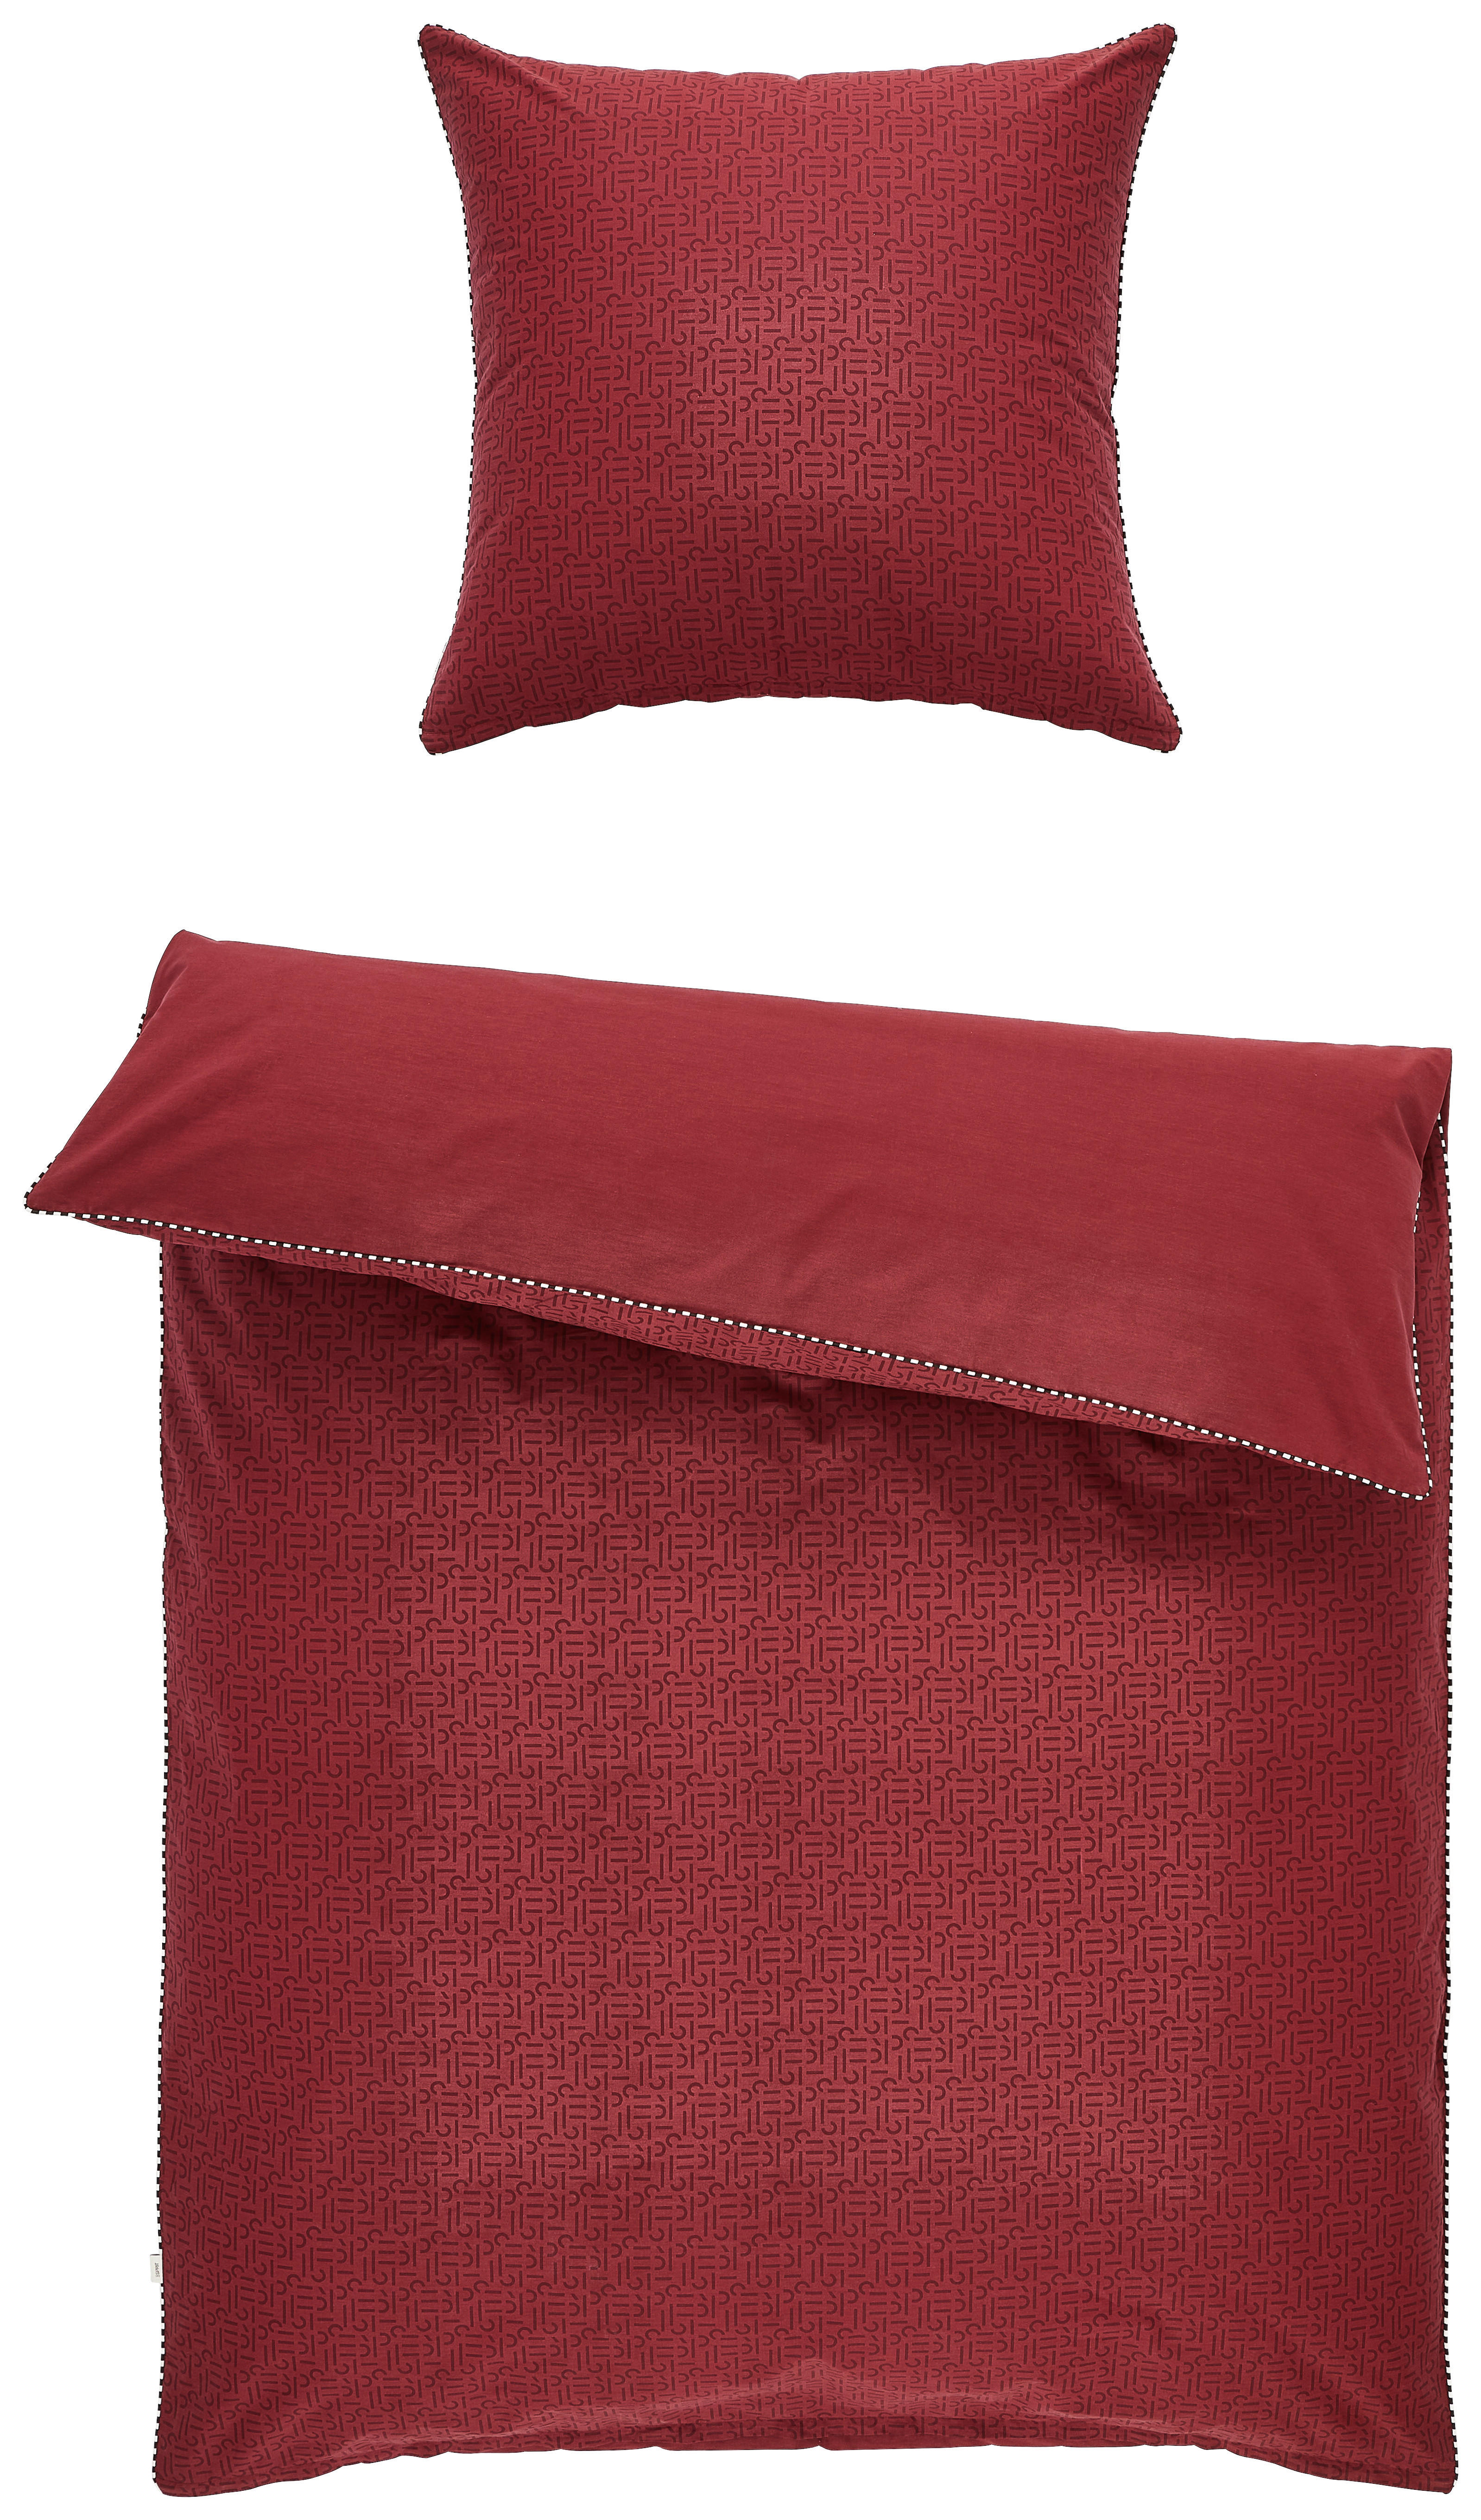 WENDEBETTWÄSCHE Scatter Renforcé  - Rot/Schwarz, Design, Textil (135/200cm) - Esprit